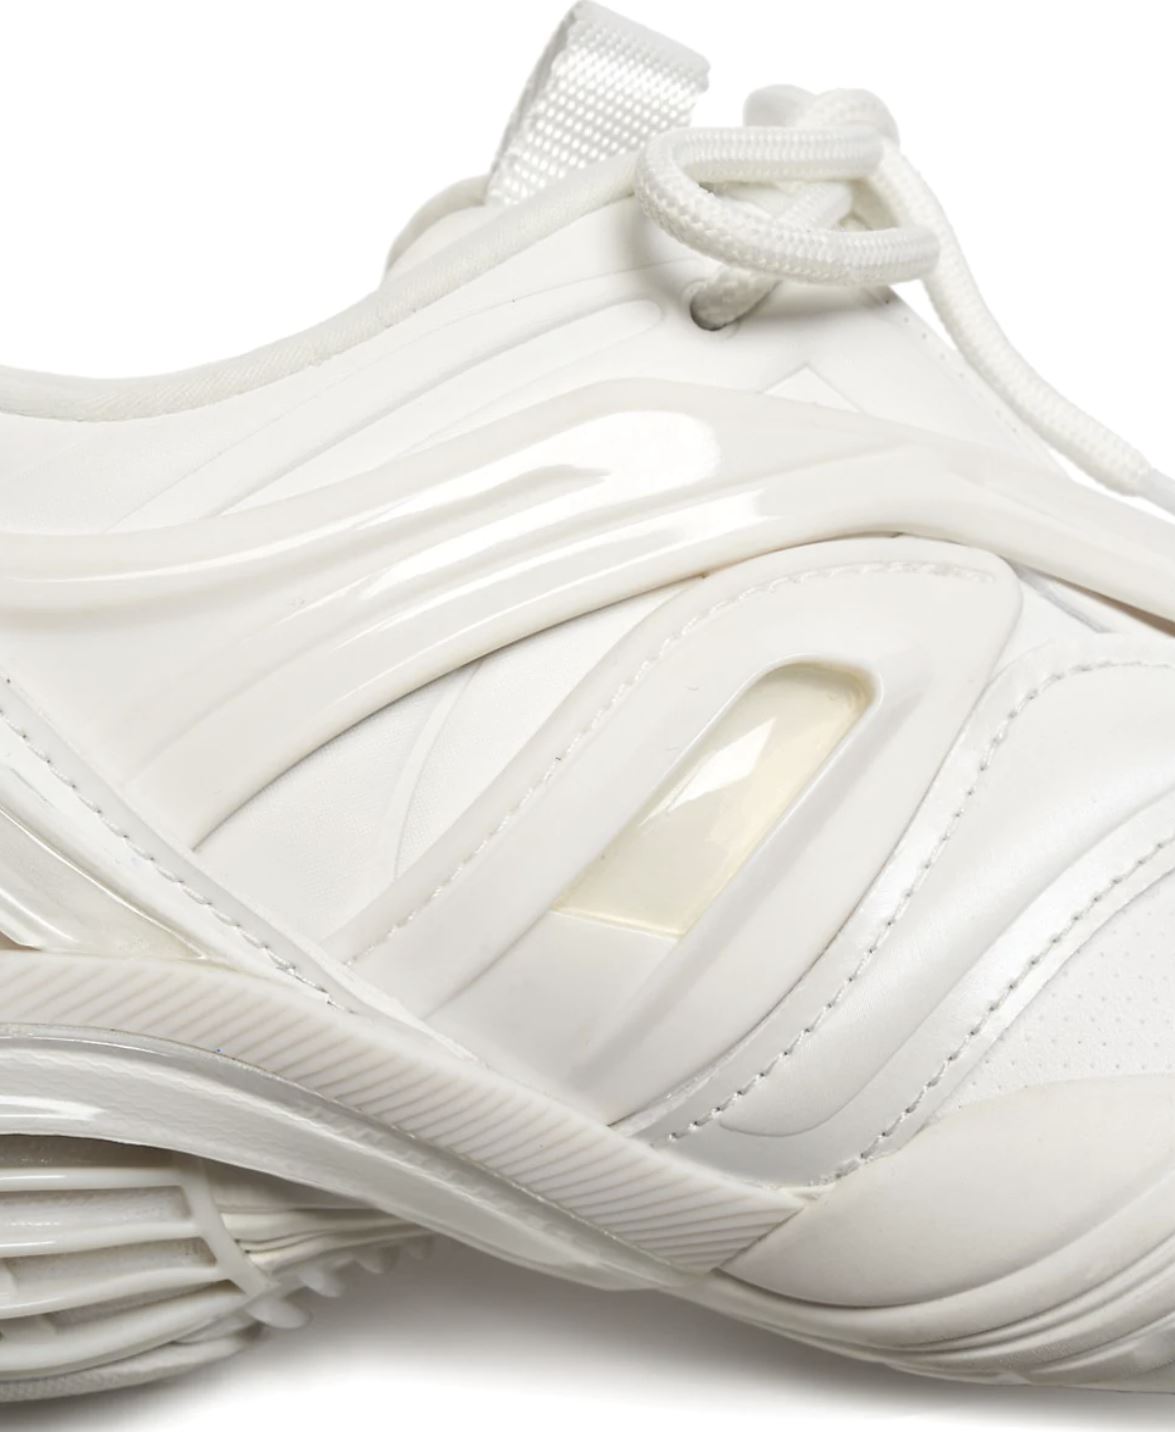 NIB Женские кроссовки Balenciaga Tyrex за 950 долларов США, белые, 9 Вт, США (39 Вт, евро) 